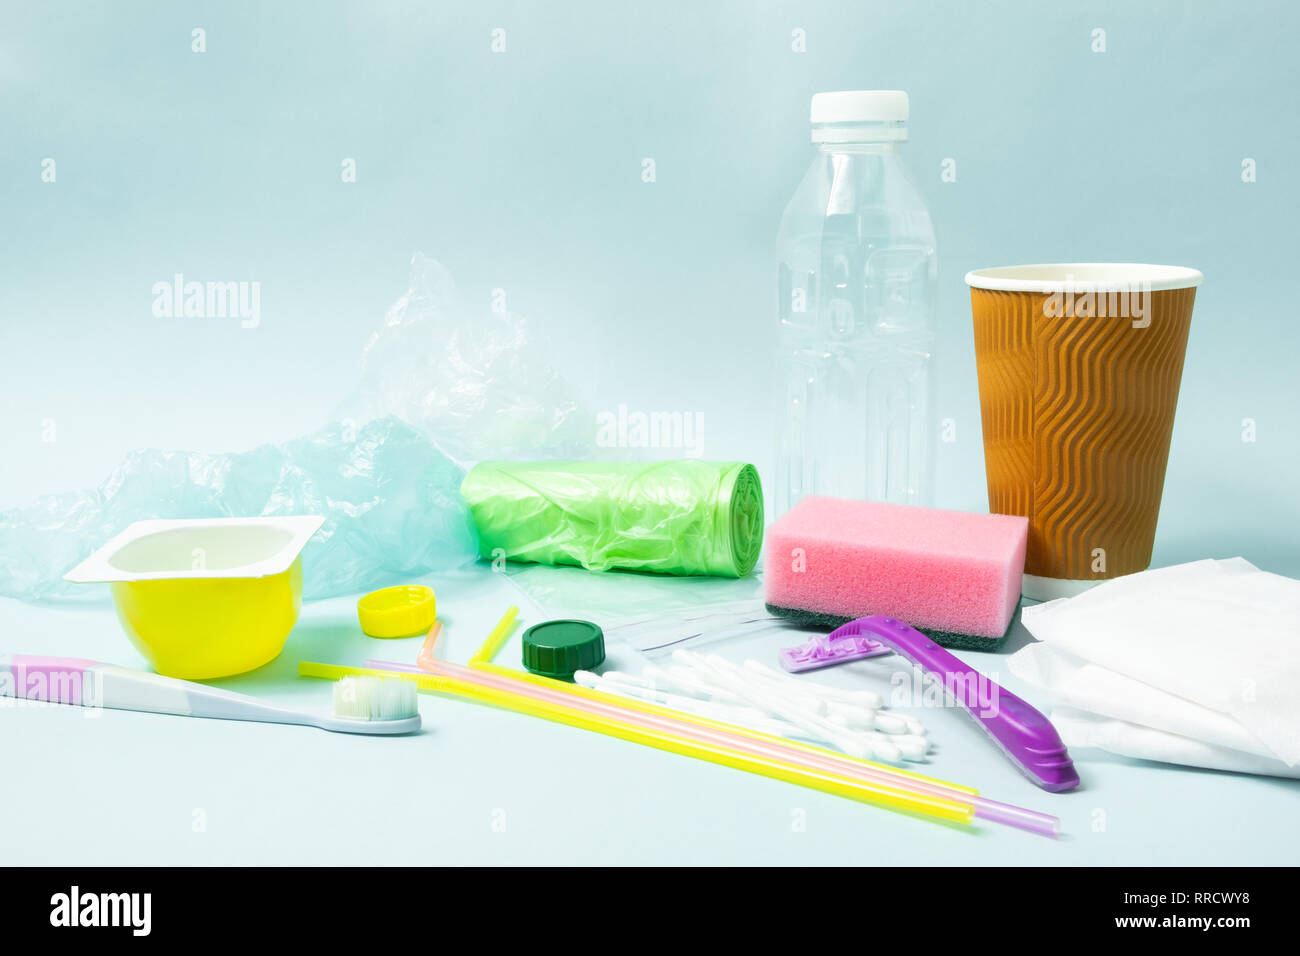 Kunststoffabfälle Konzept: Varitety einzelner Objekte verwenden, die mit jedem Tag geworfen. Plastikflasche, Hygieneartikel und Kunststoffgehäuse, Ecolo Stockfoto